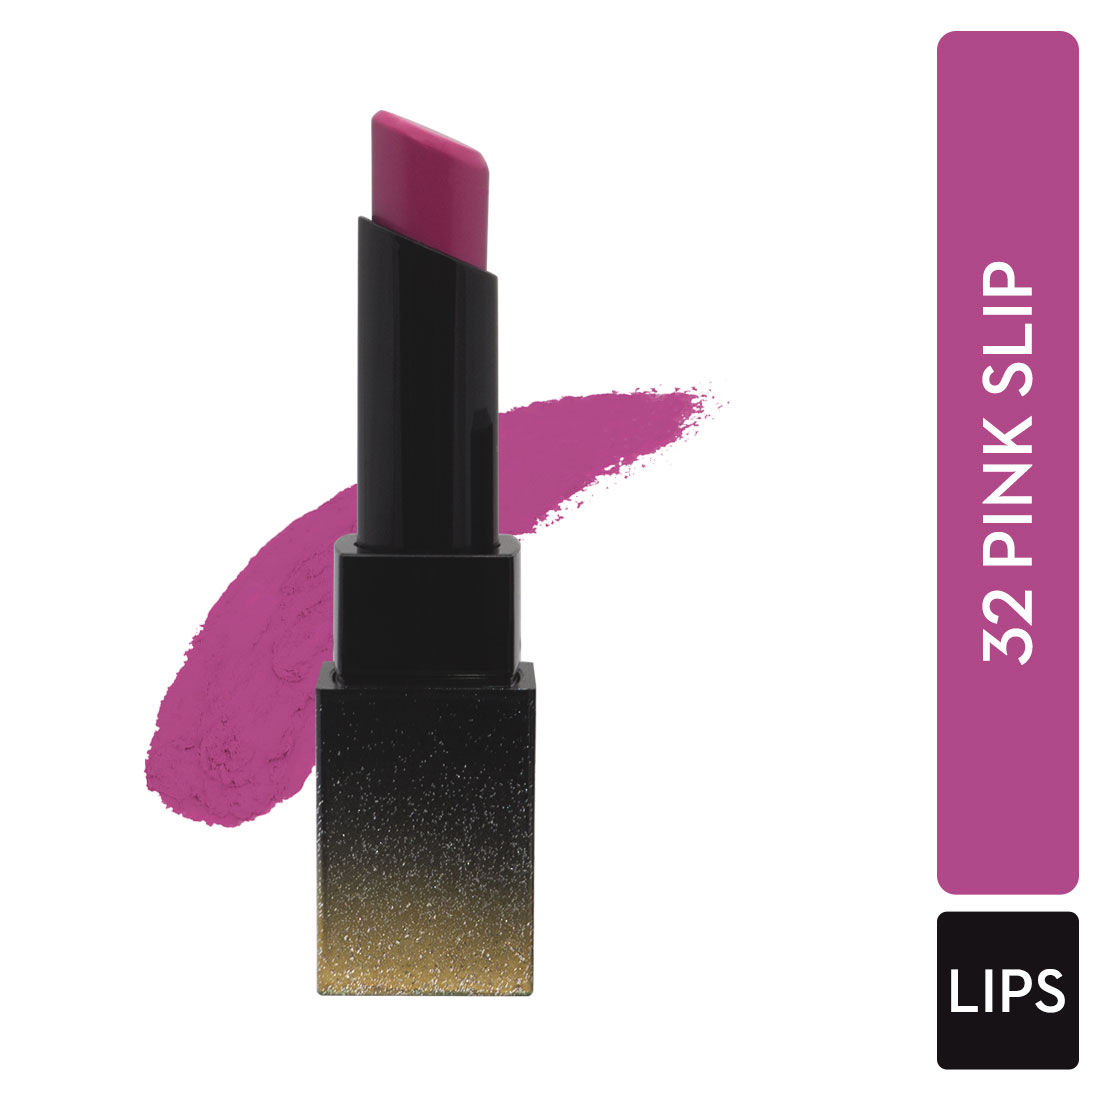 Buy SUGAR Cosmetics - Nothing Else Matter - Longwear Matte Lipstick - 32 Pink Slip (Fuchsia) - 3.5 gms - Water-Resistant, Premium Matte Lipstick, Paraben Free - Purplle